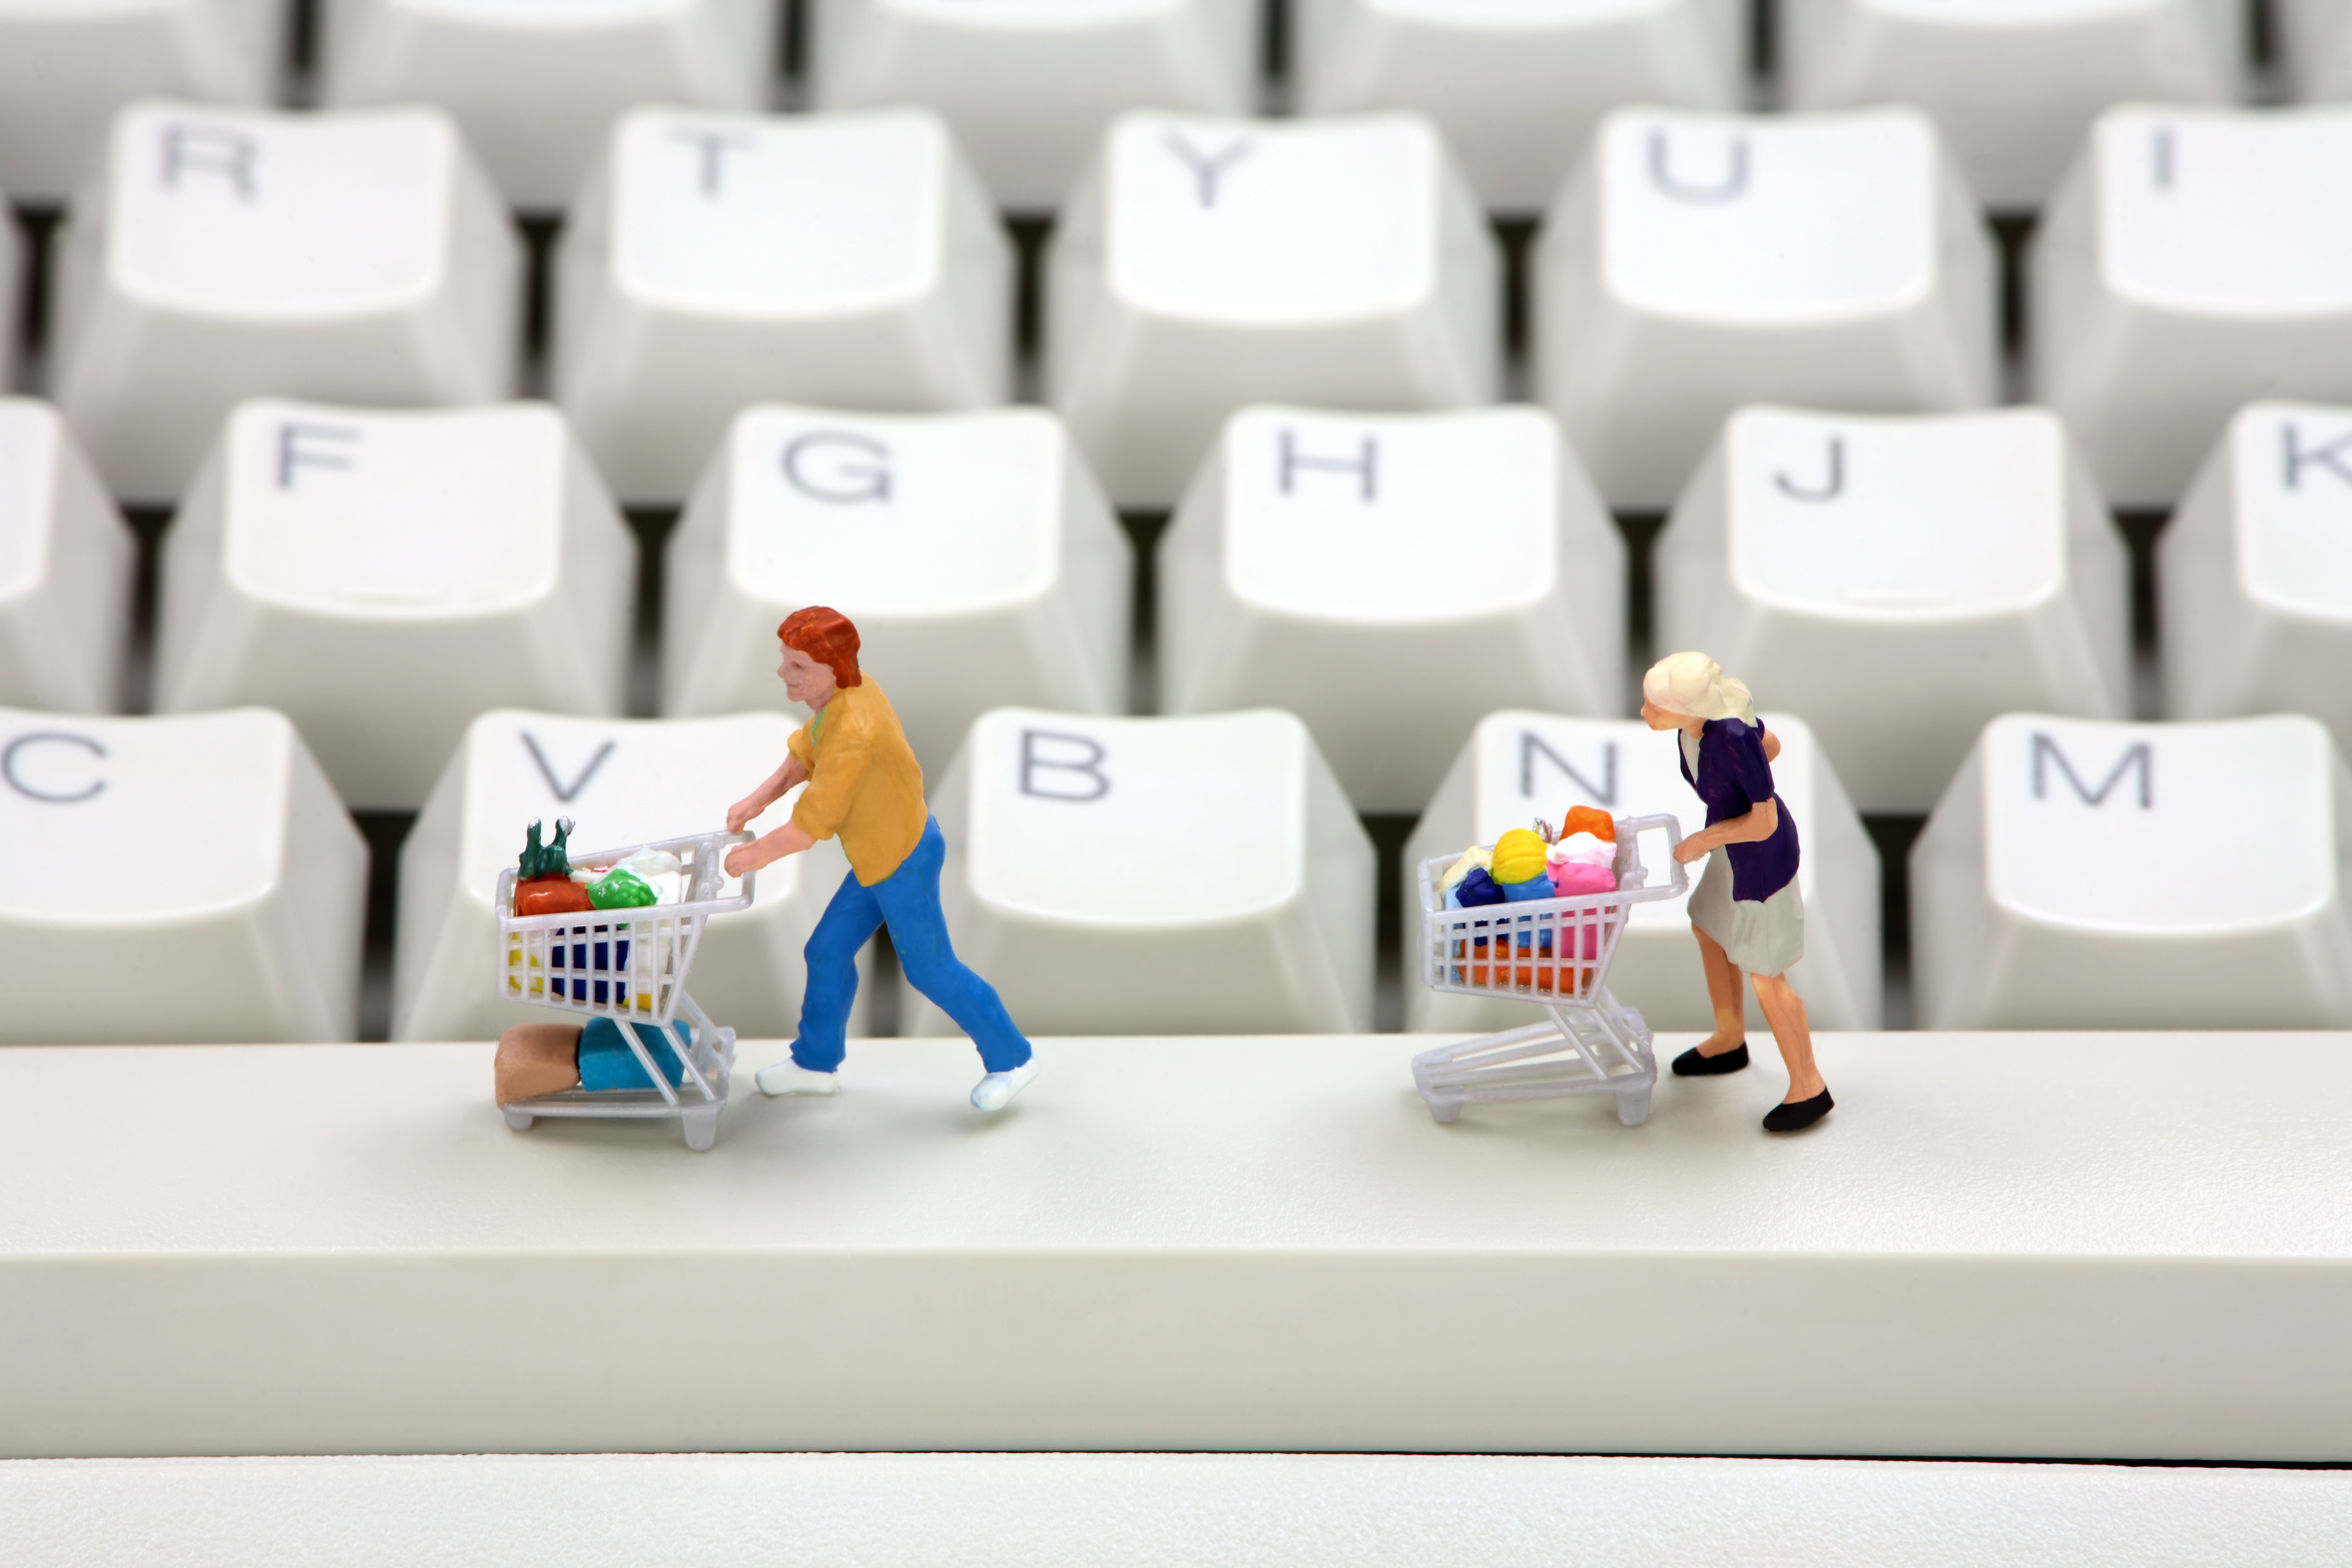 Ứng dụng Nút mua hàng – Click dễ dàng hơn, mua sắm tiện lợi hơn